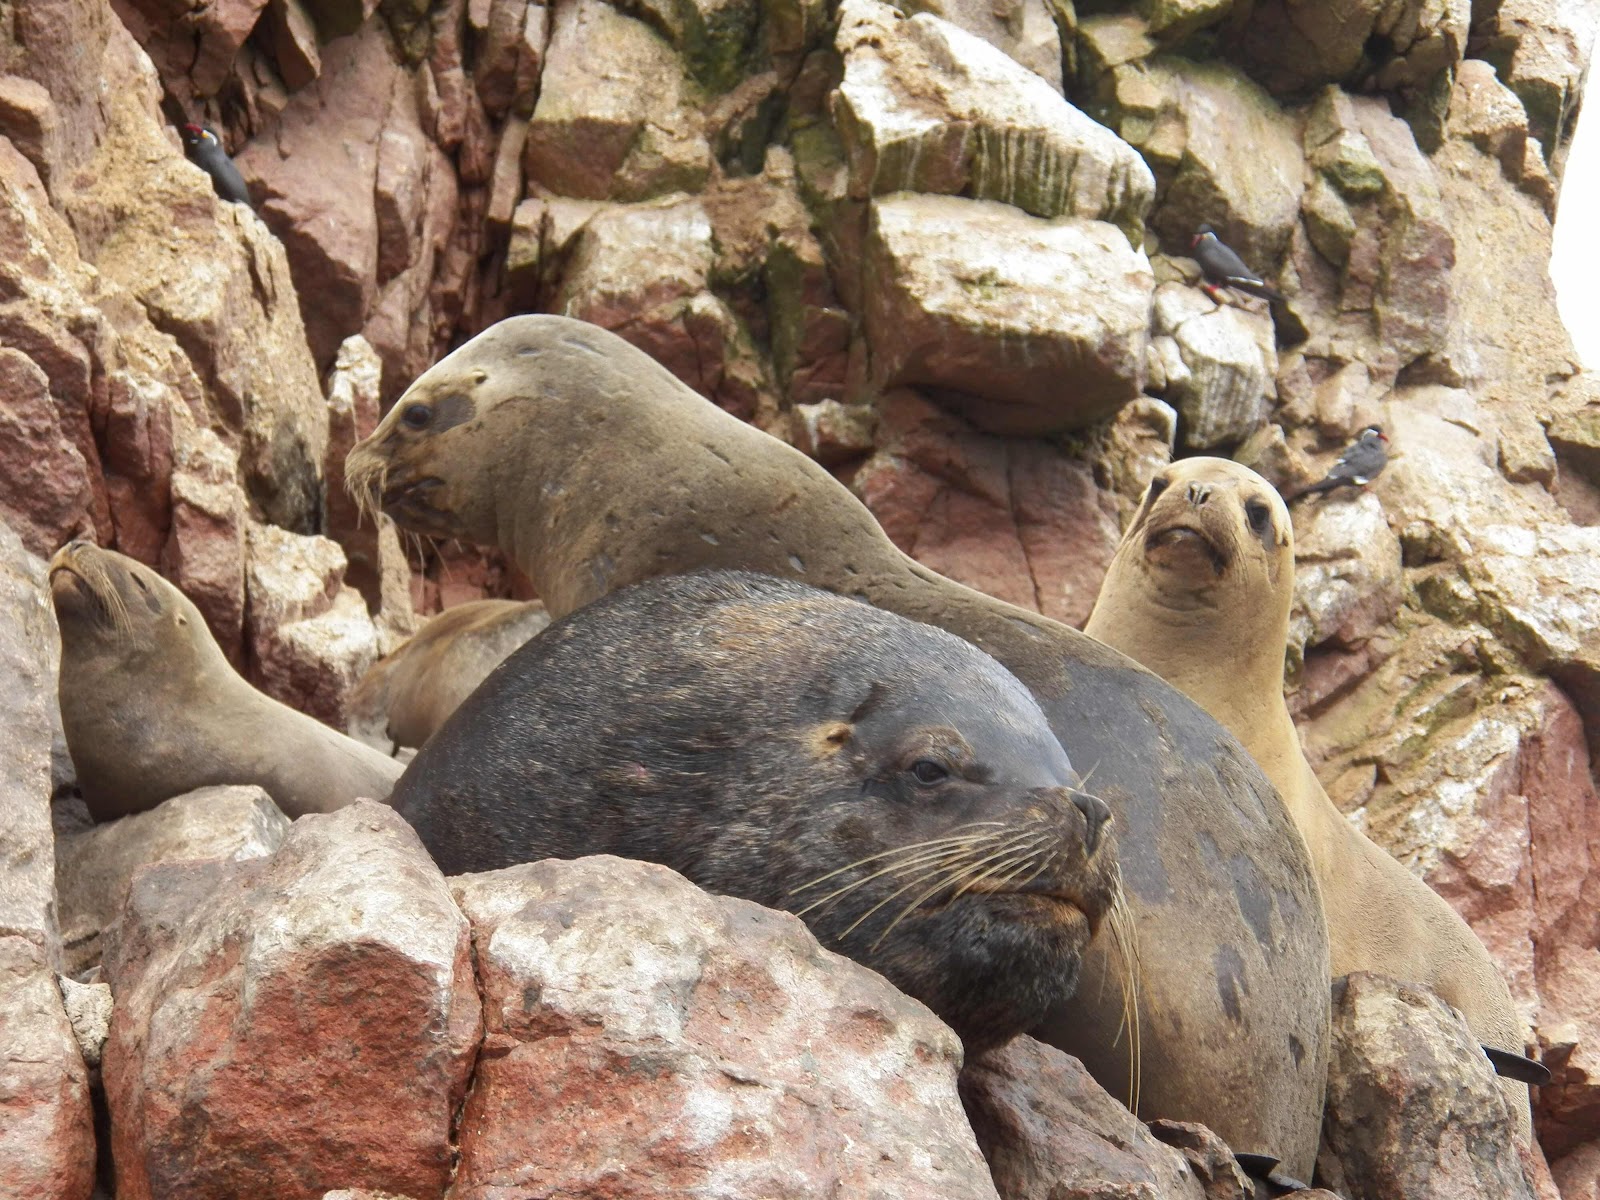 Lobos de Mar, Islas Ballestas, Peru